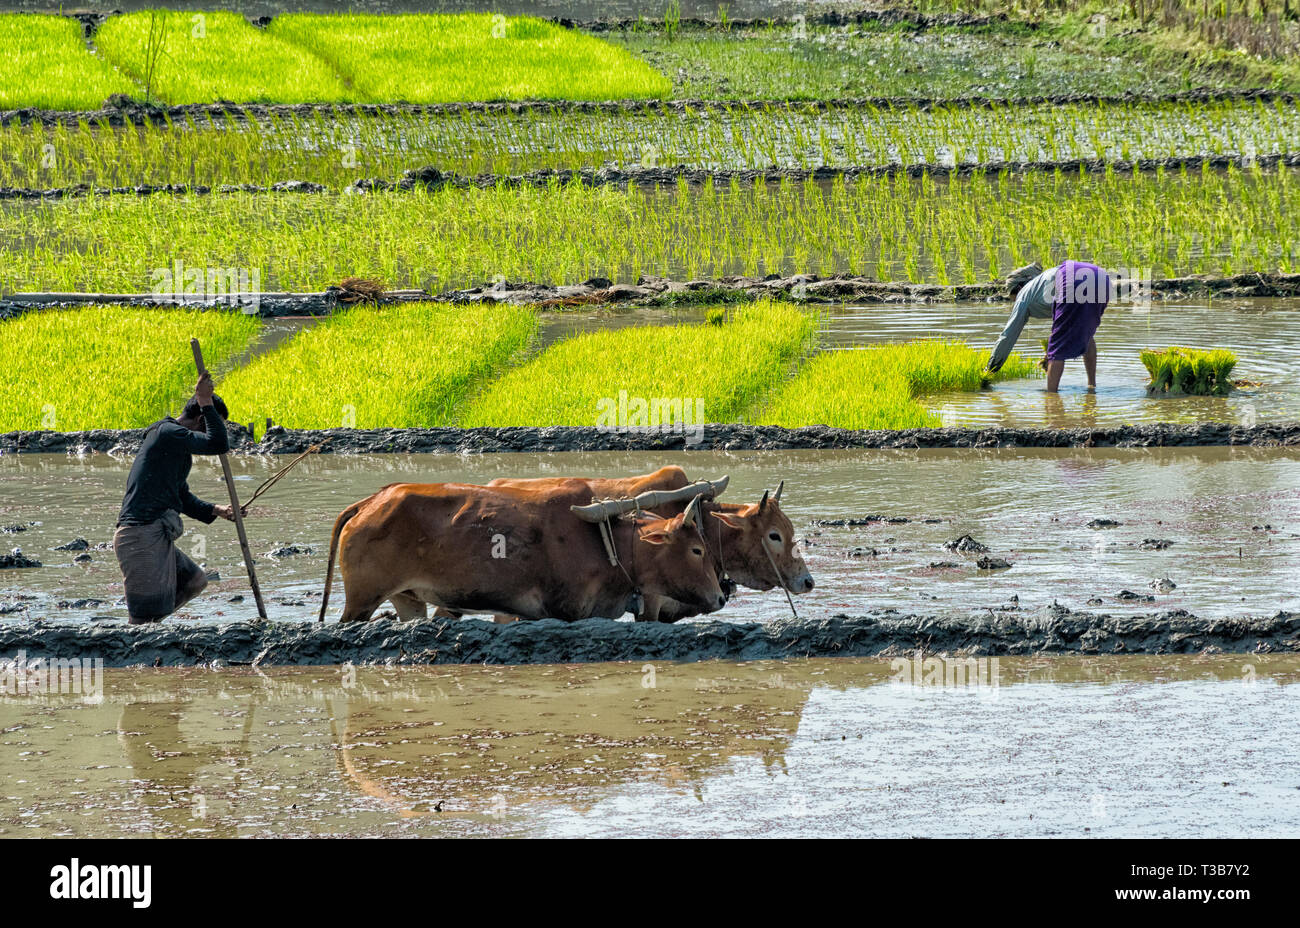 Los agricultores sembrar semillas de arroz y arar con vaca en el arrozal, Rangamati, de la división de Chittagong, Bangladesh Foto de stock